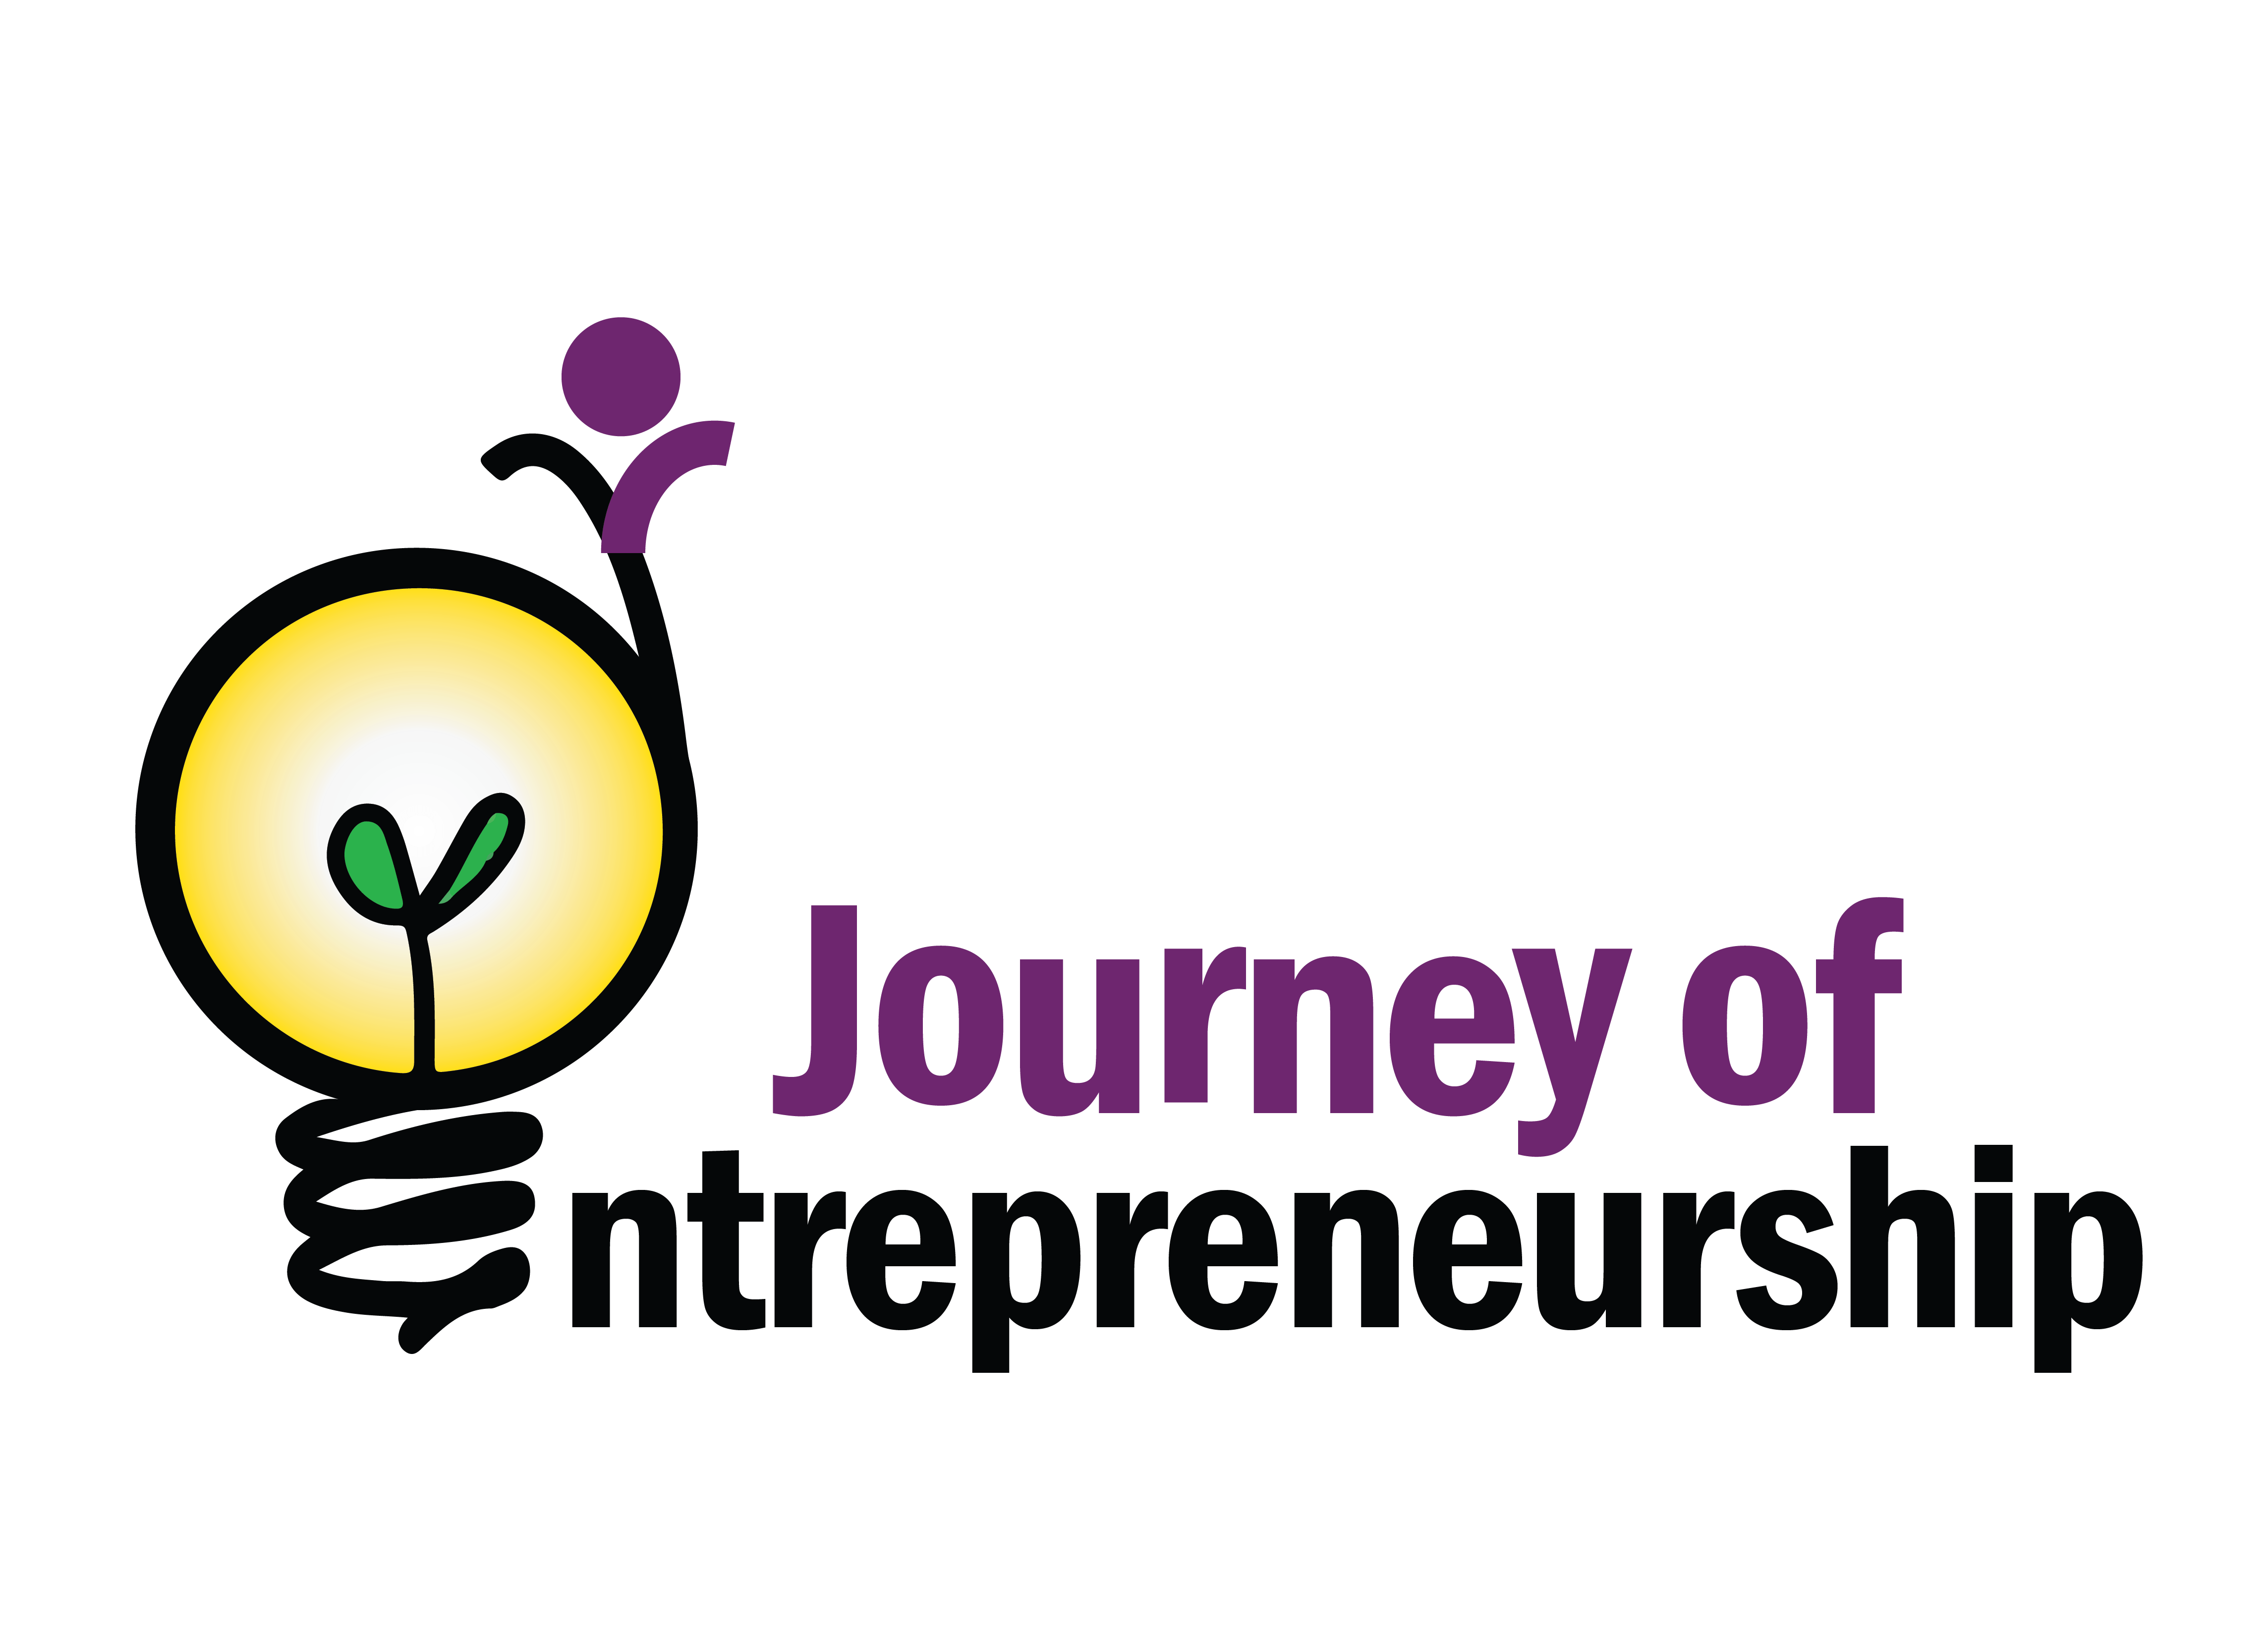 Entrepreneurship Logo - Journey of Entrepreneurship